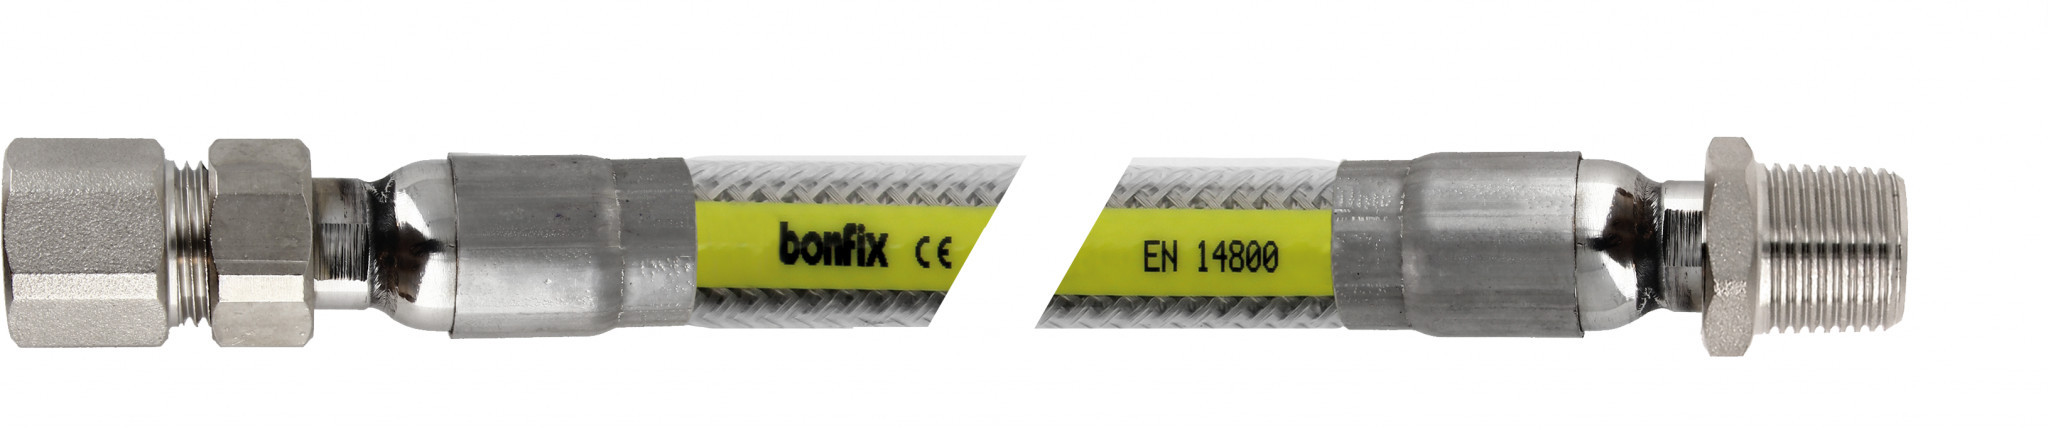 Bonfix Inox gasflexibels voor België Superieure RVS gasslang 150 cm - 1/2 binnendraad x 1/2 buitendraad